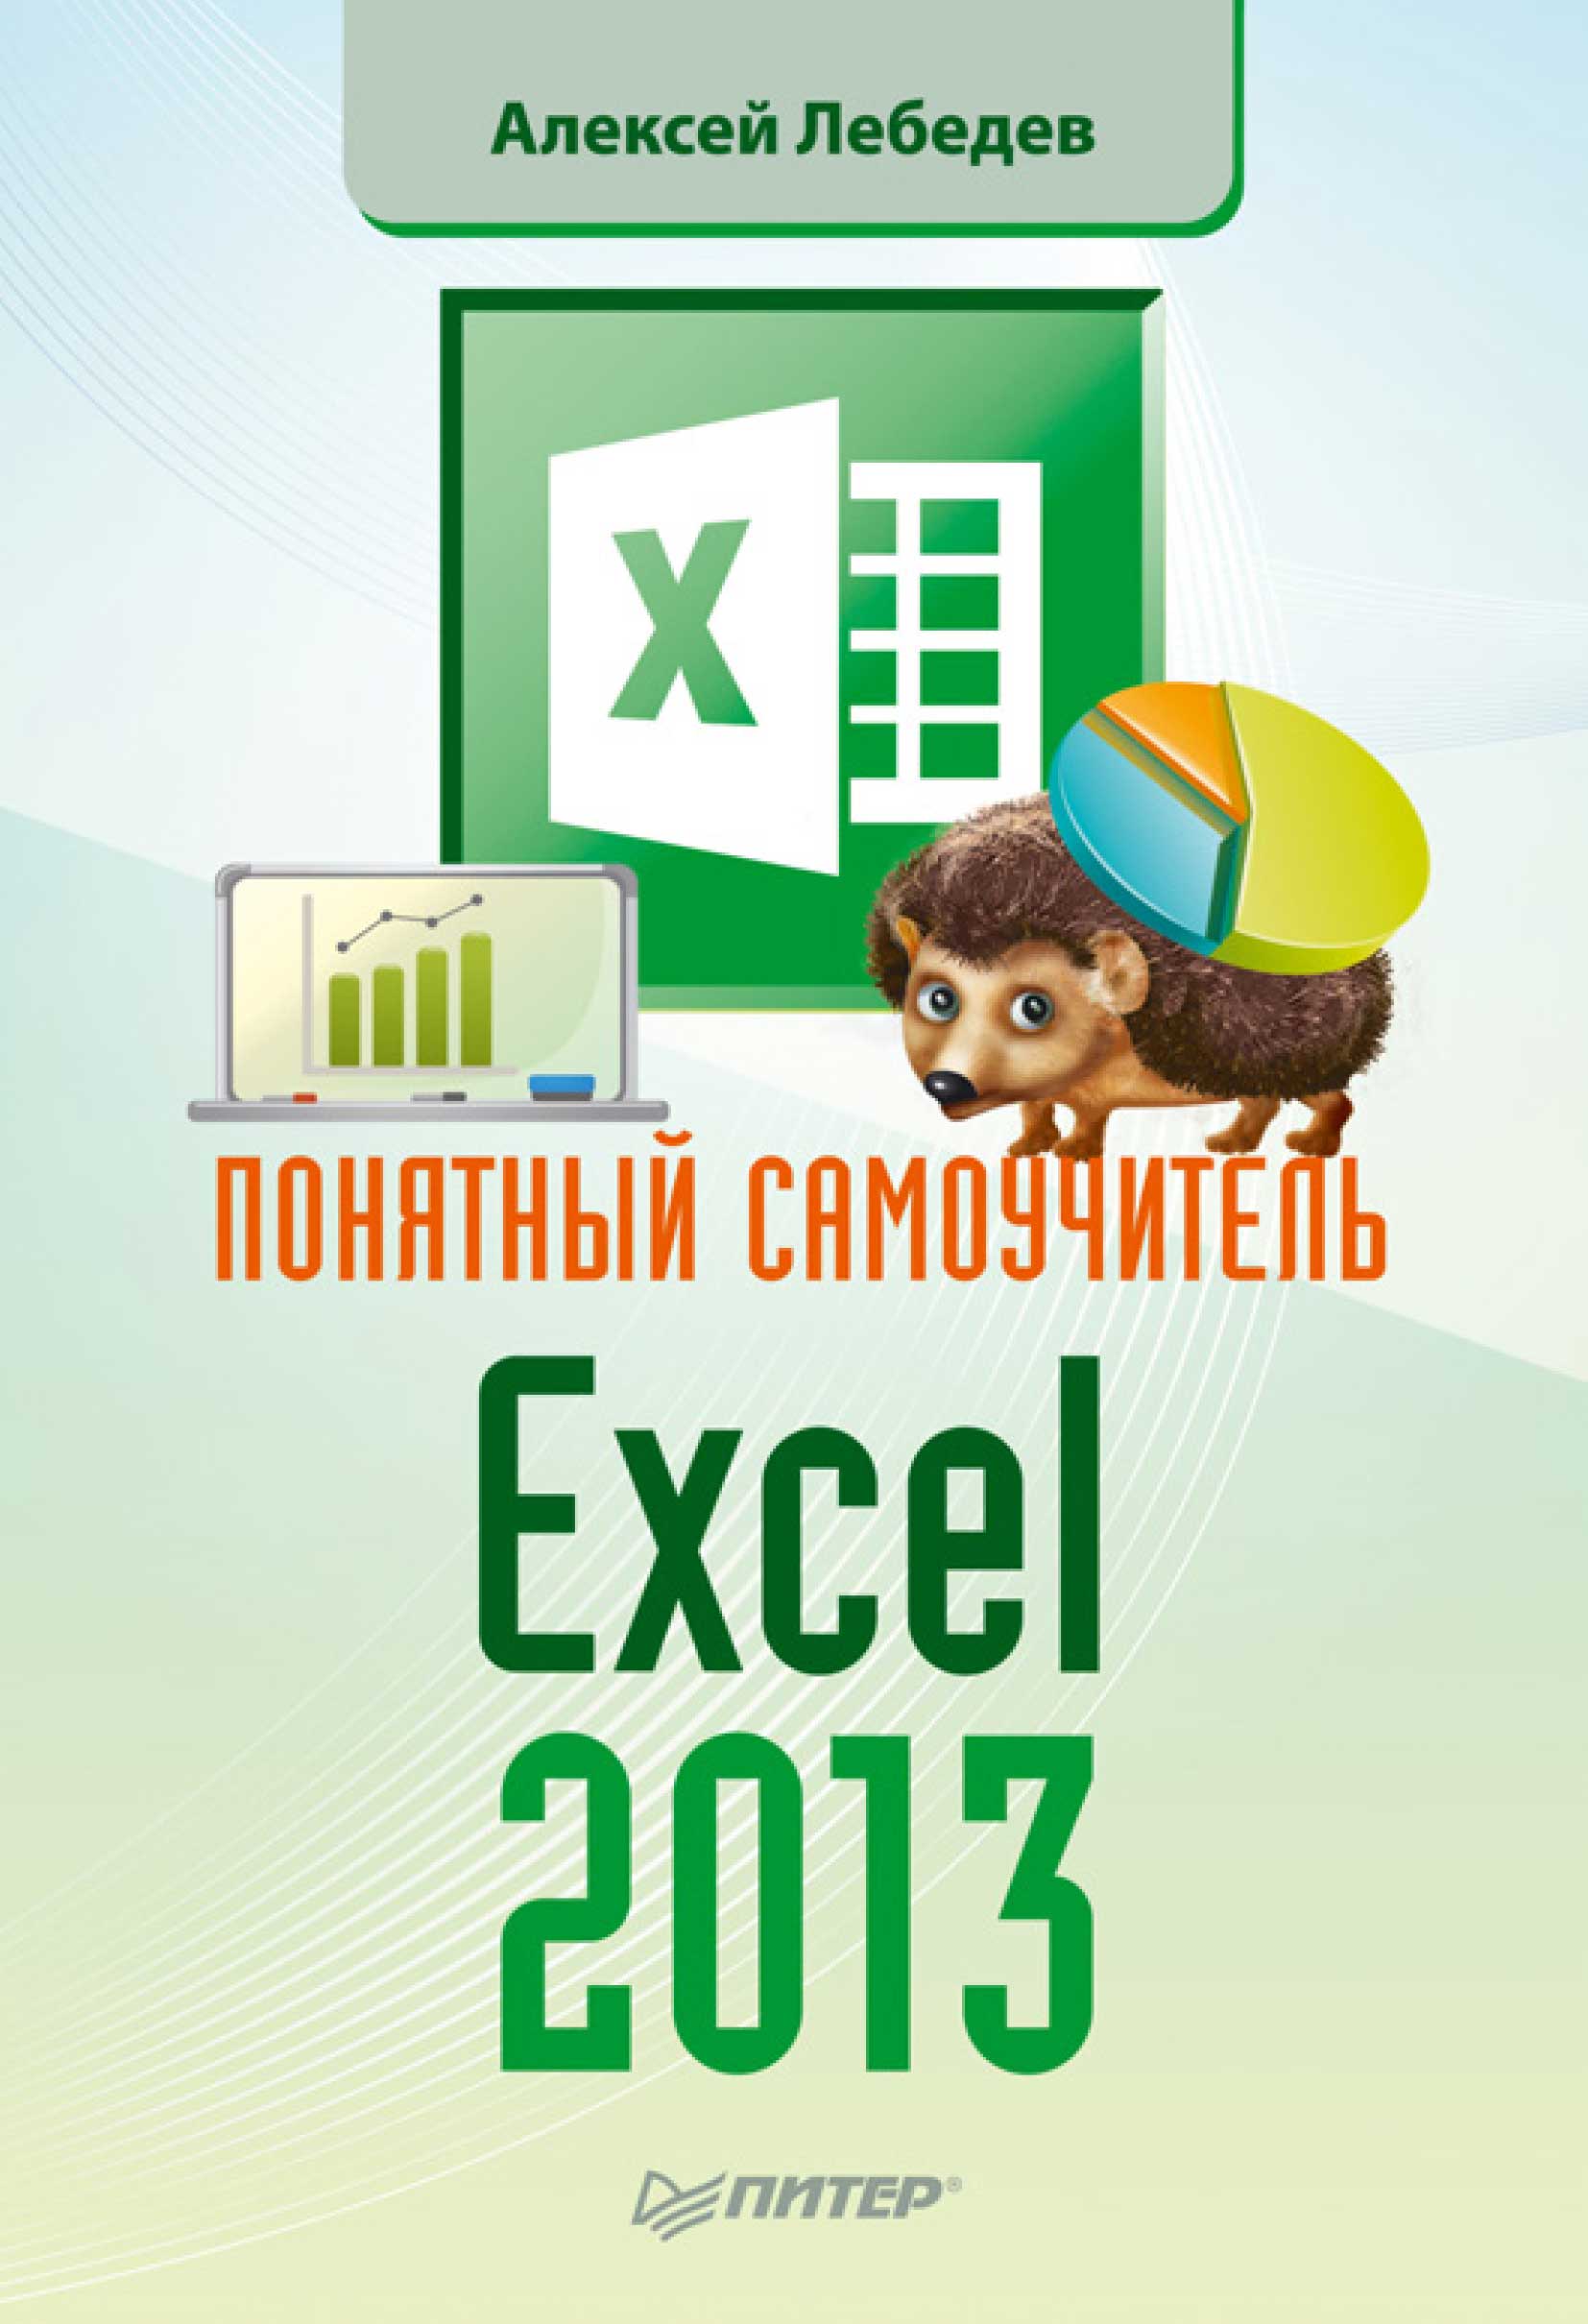 Книга Самоучитель (Питер) Понятный самоучитель Excel 2013 созданная Александр Лебедев может относится к жанру программы. Стоимость электронной книги Понятный самоучитель Excel 2013 с идентификатором 7059842 составляет 99.00 руб.